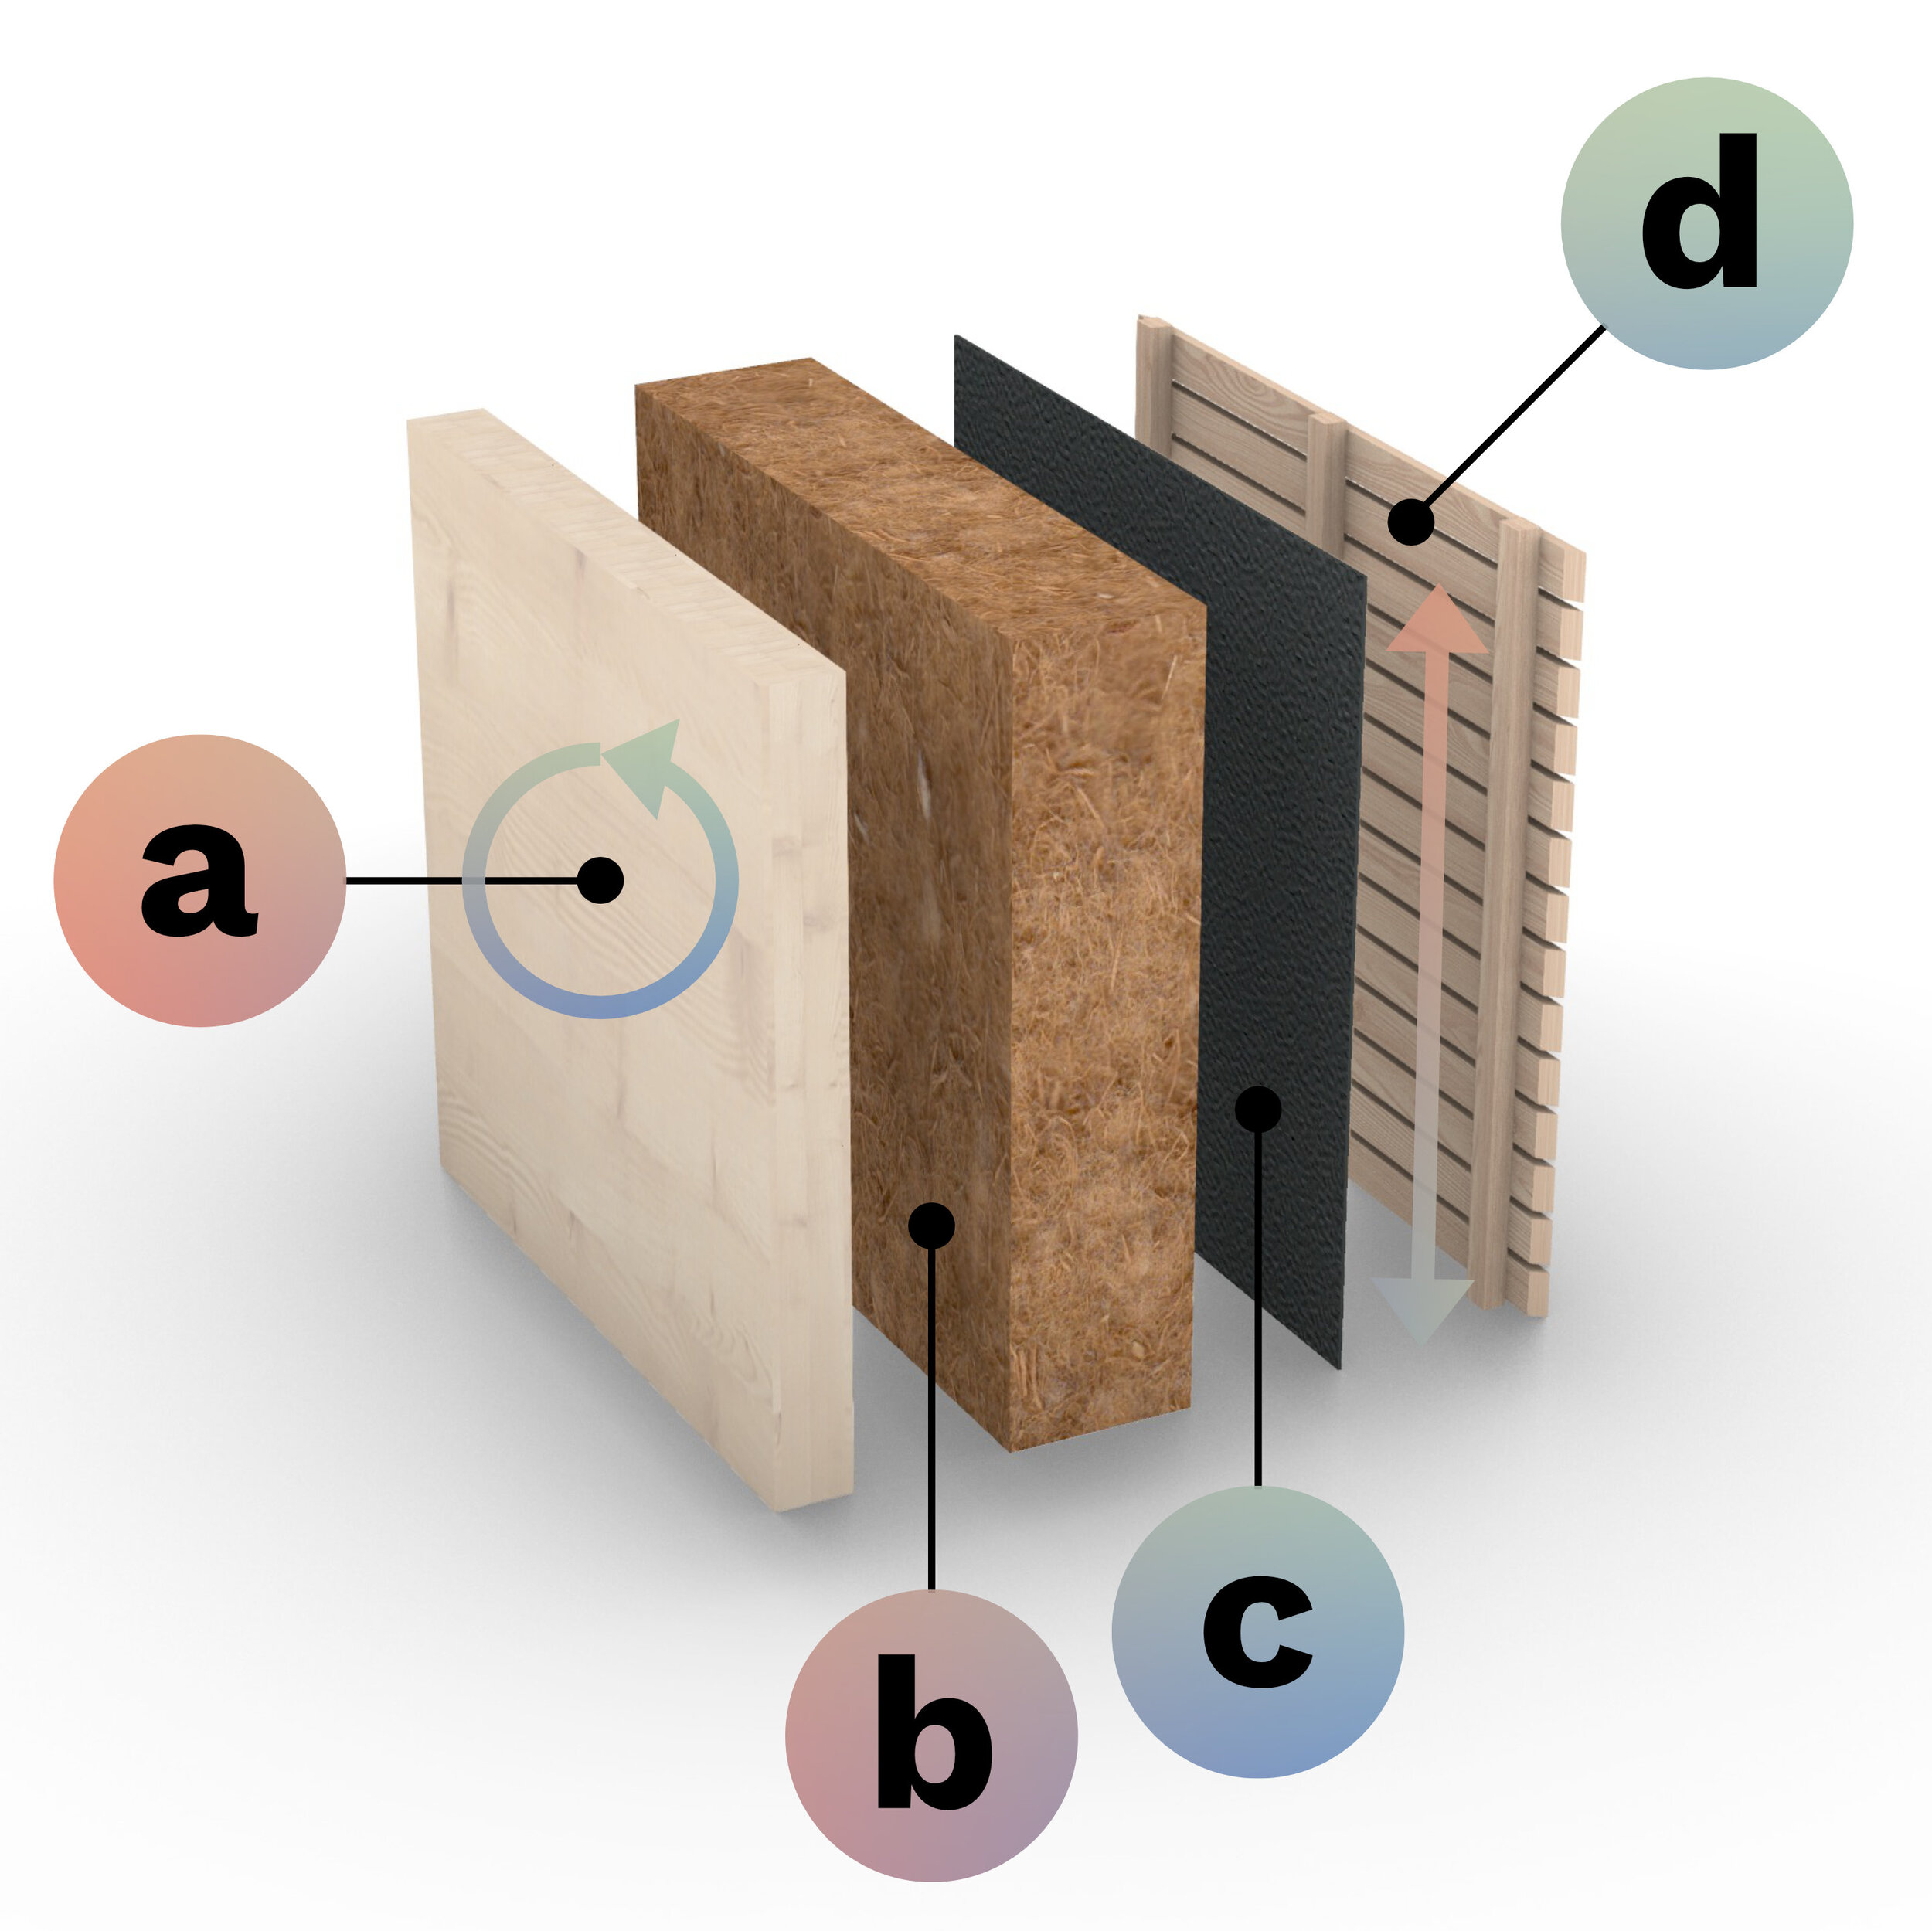 a: 10 cm starkes Vollholz, b: Natürliche Holzfaser-Dämmung , c:  Unterspannbahn (schützt die Dämmung (b) vor Wind und Regen), d: Hinterlüftete Fassade